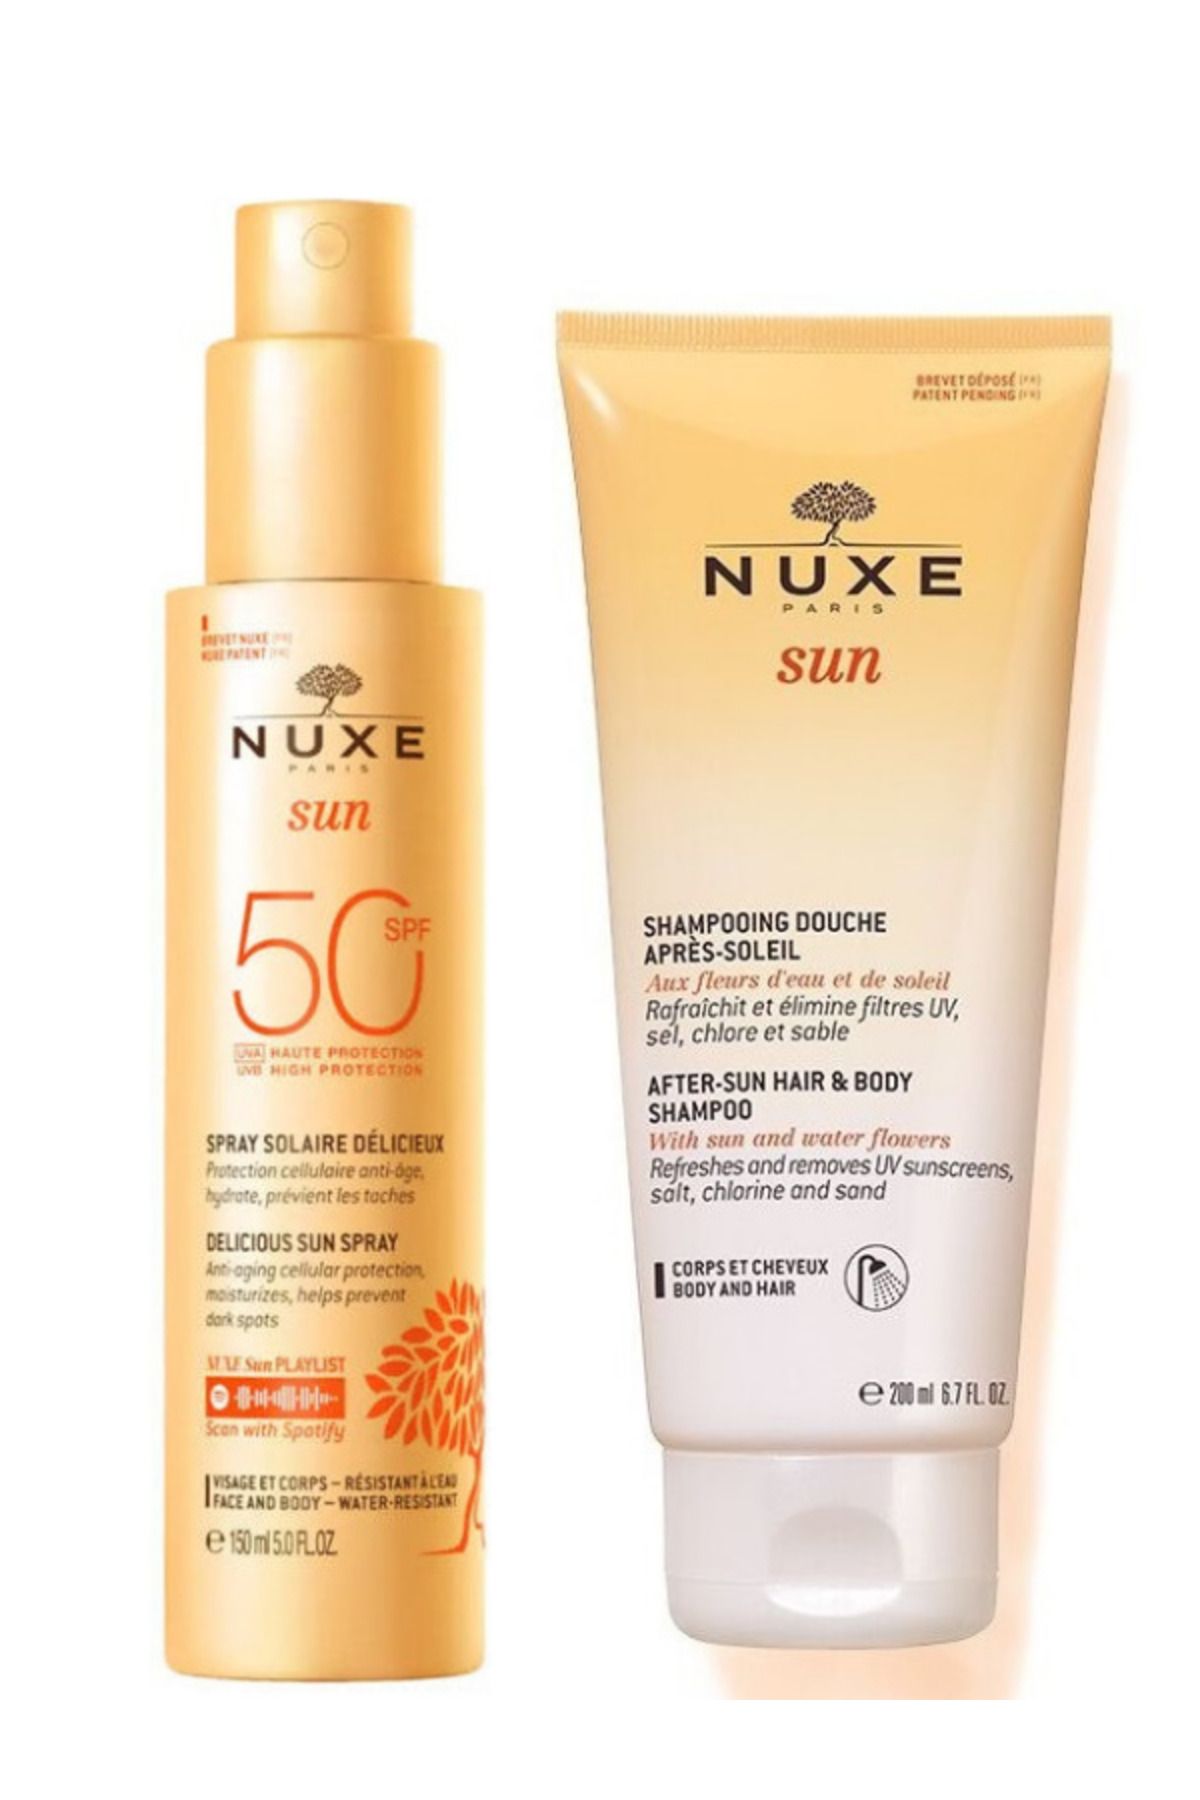 Nuxe Sun Güneş Koruyucu Yüz ve Vücut Sütü Spf 50 150 ml - Nuxe Sun Güneş Sonrası Şampuanı 200 ml